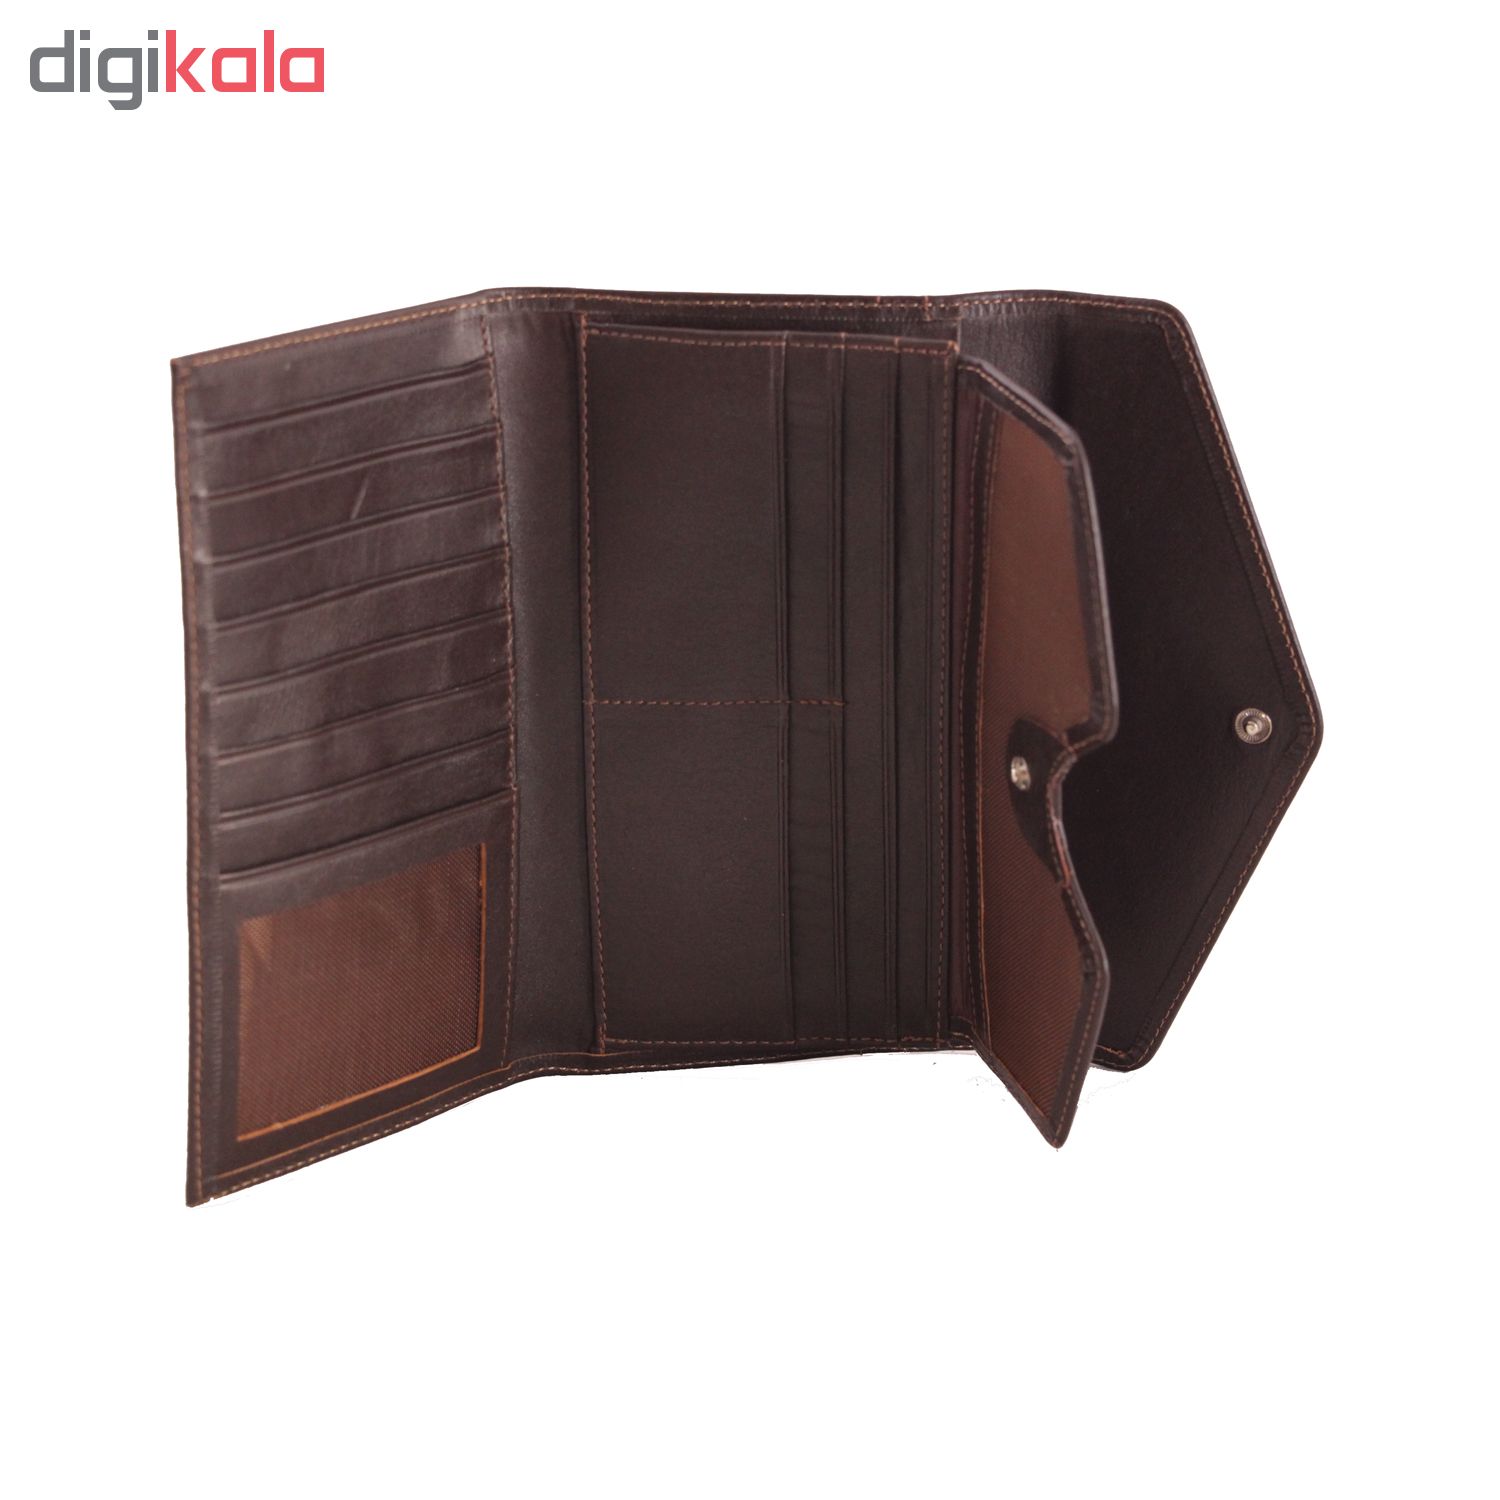 ADINCHARM natural leather wallet, model DM67 